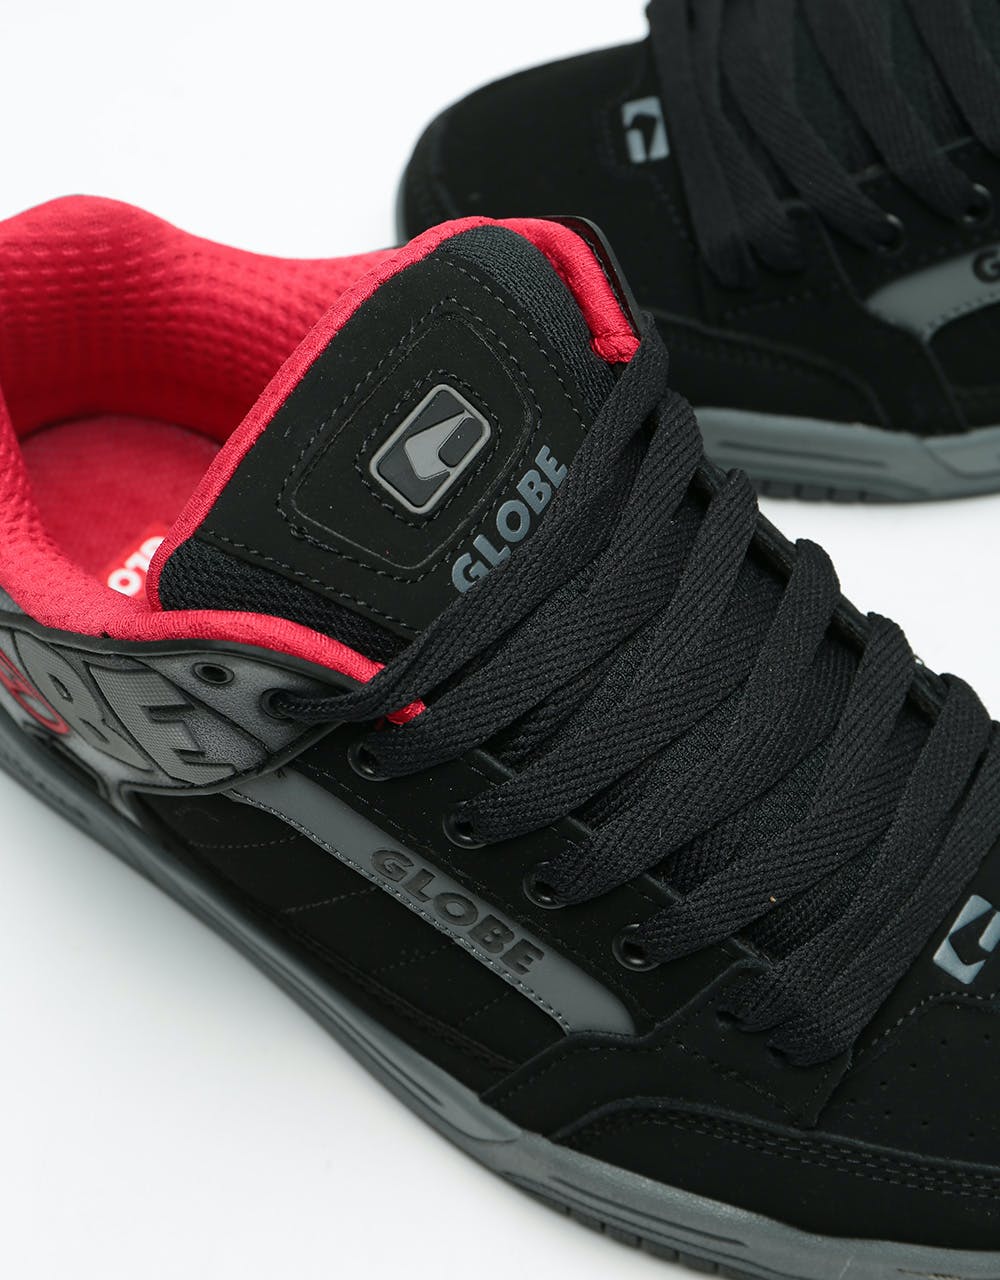 Globe Tilt Skate Shoes - Black/Carbon Red